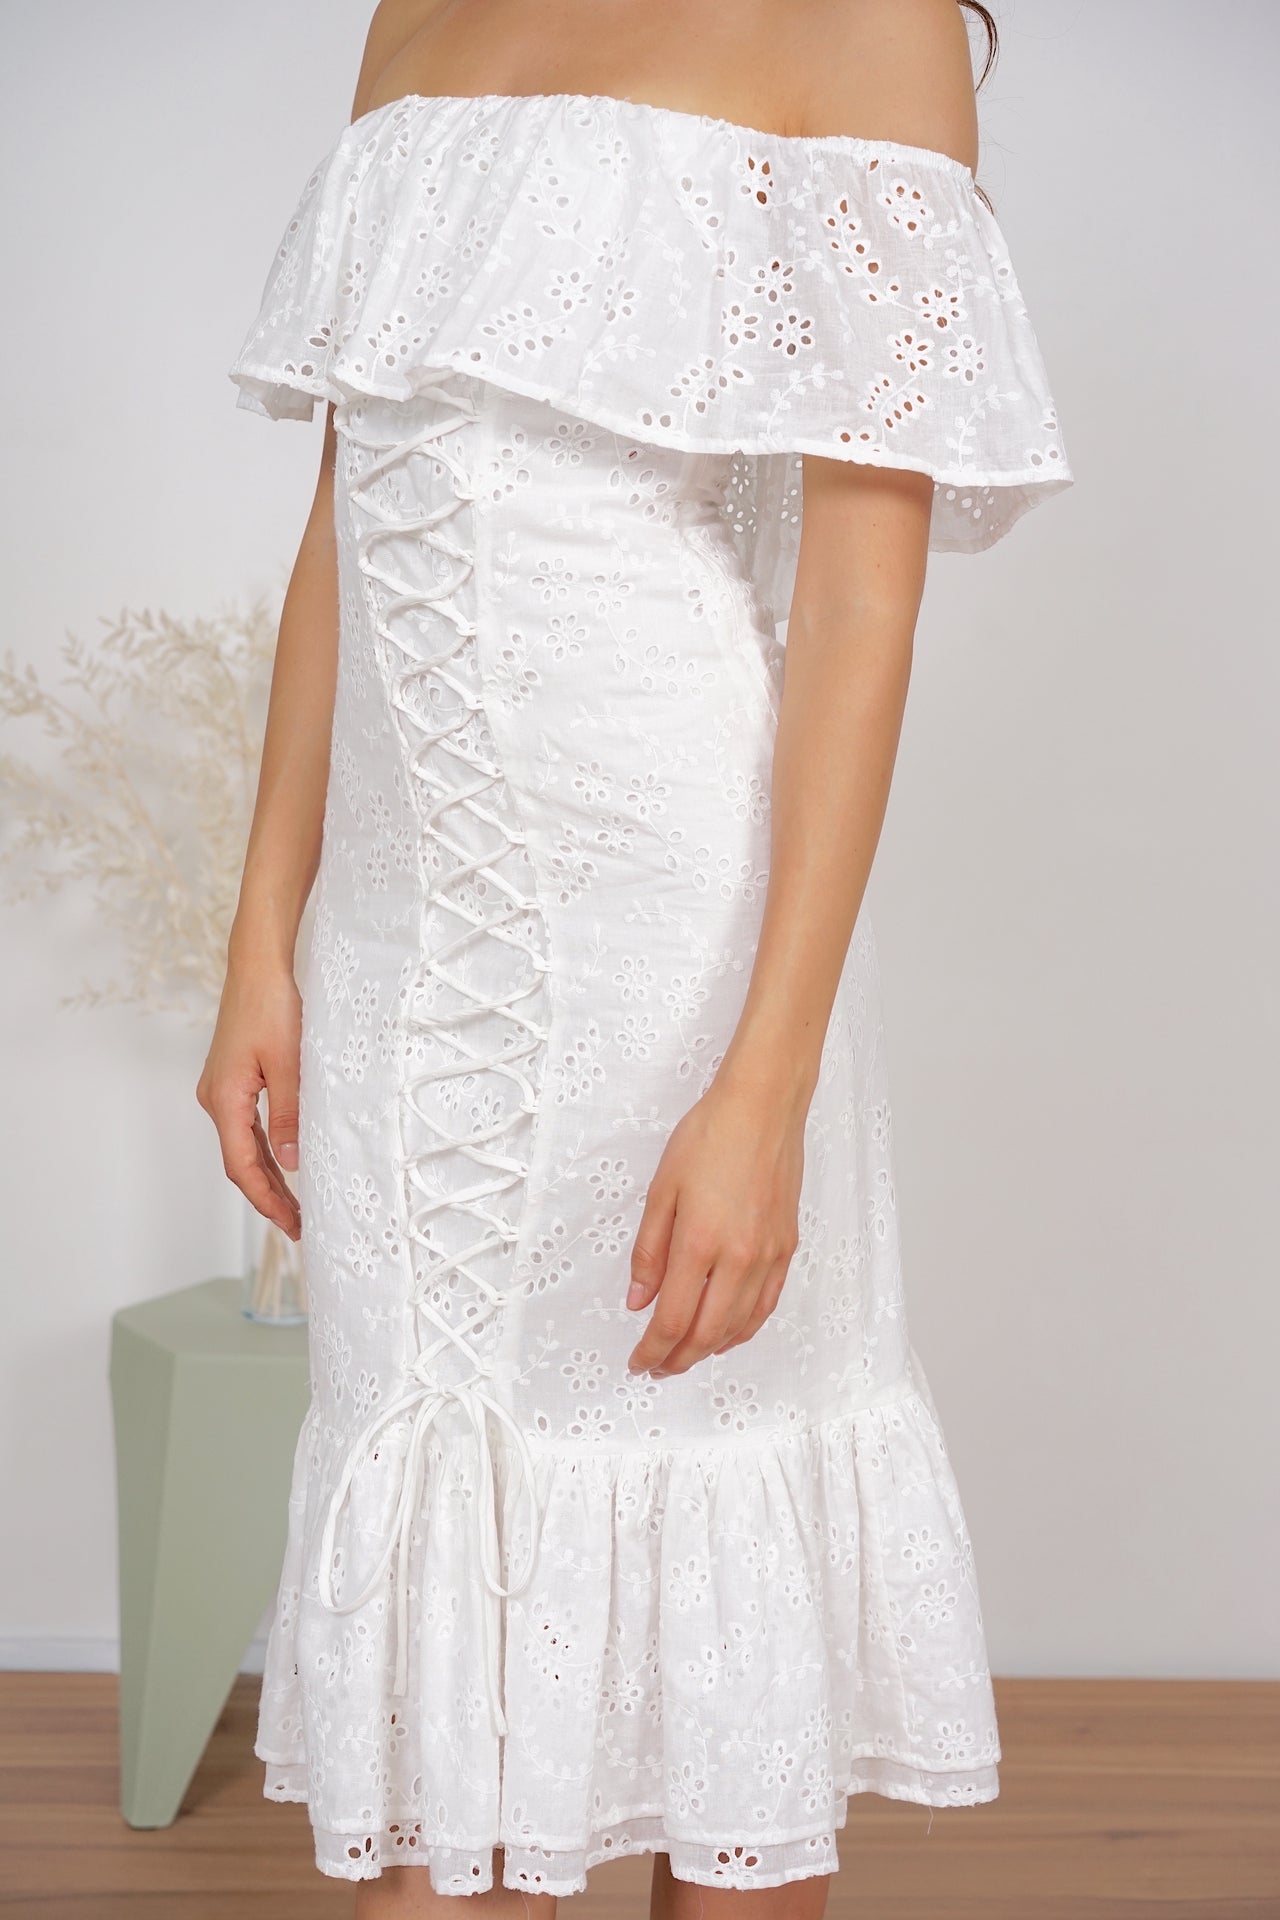 Mila Crochet Dress in White